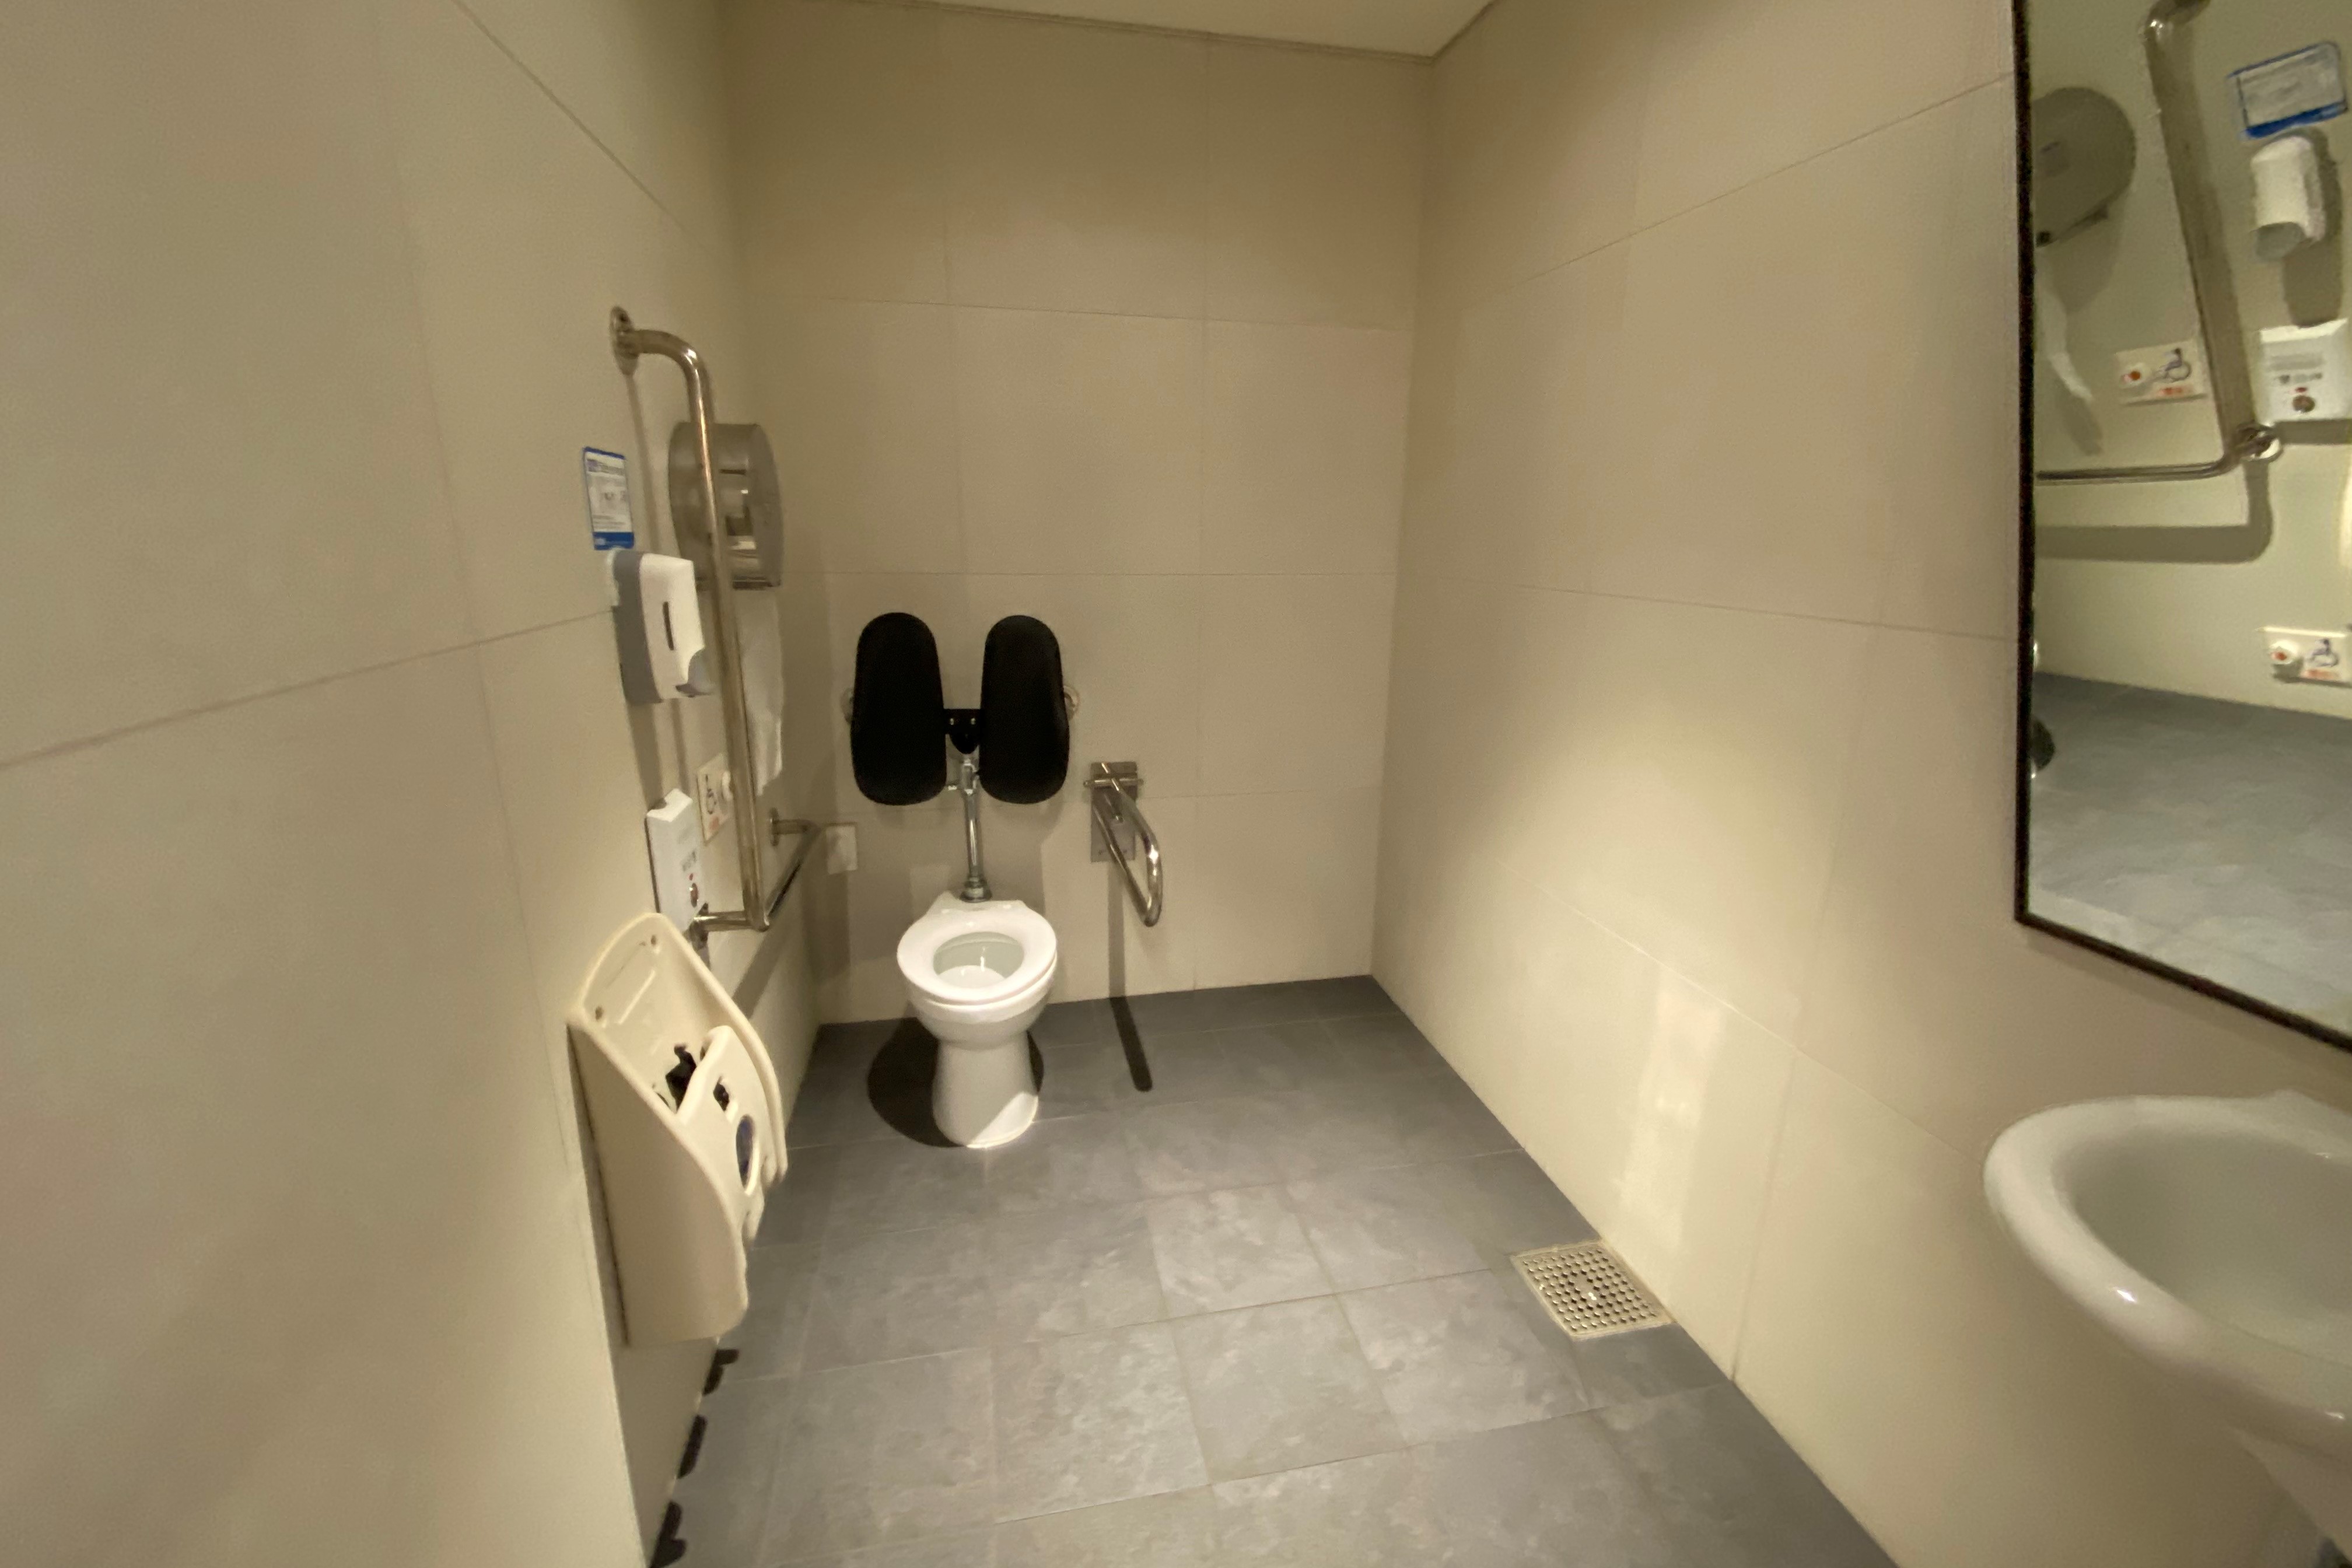 장애인 화장실0 : 내부 공간이 충분한 장애인 화장실 내부 전경